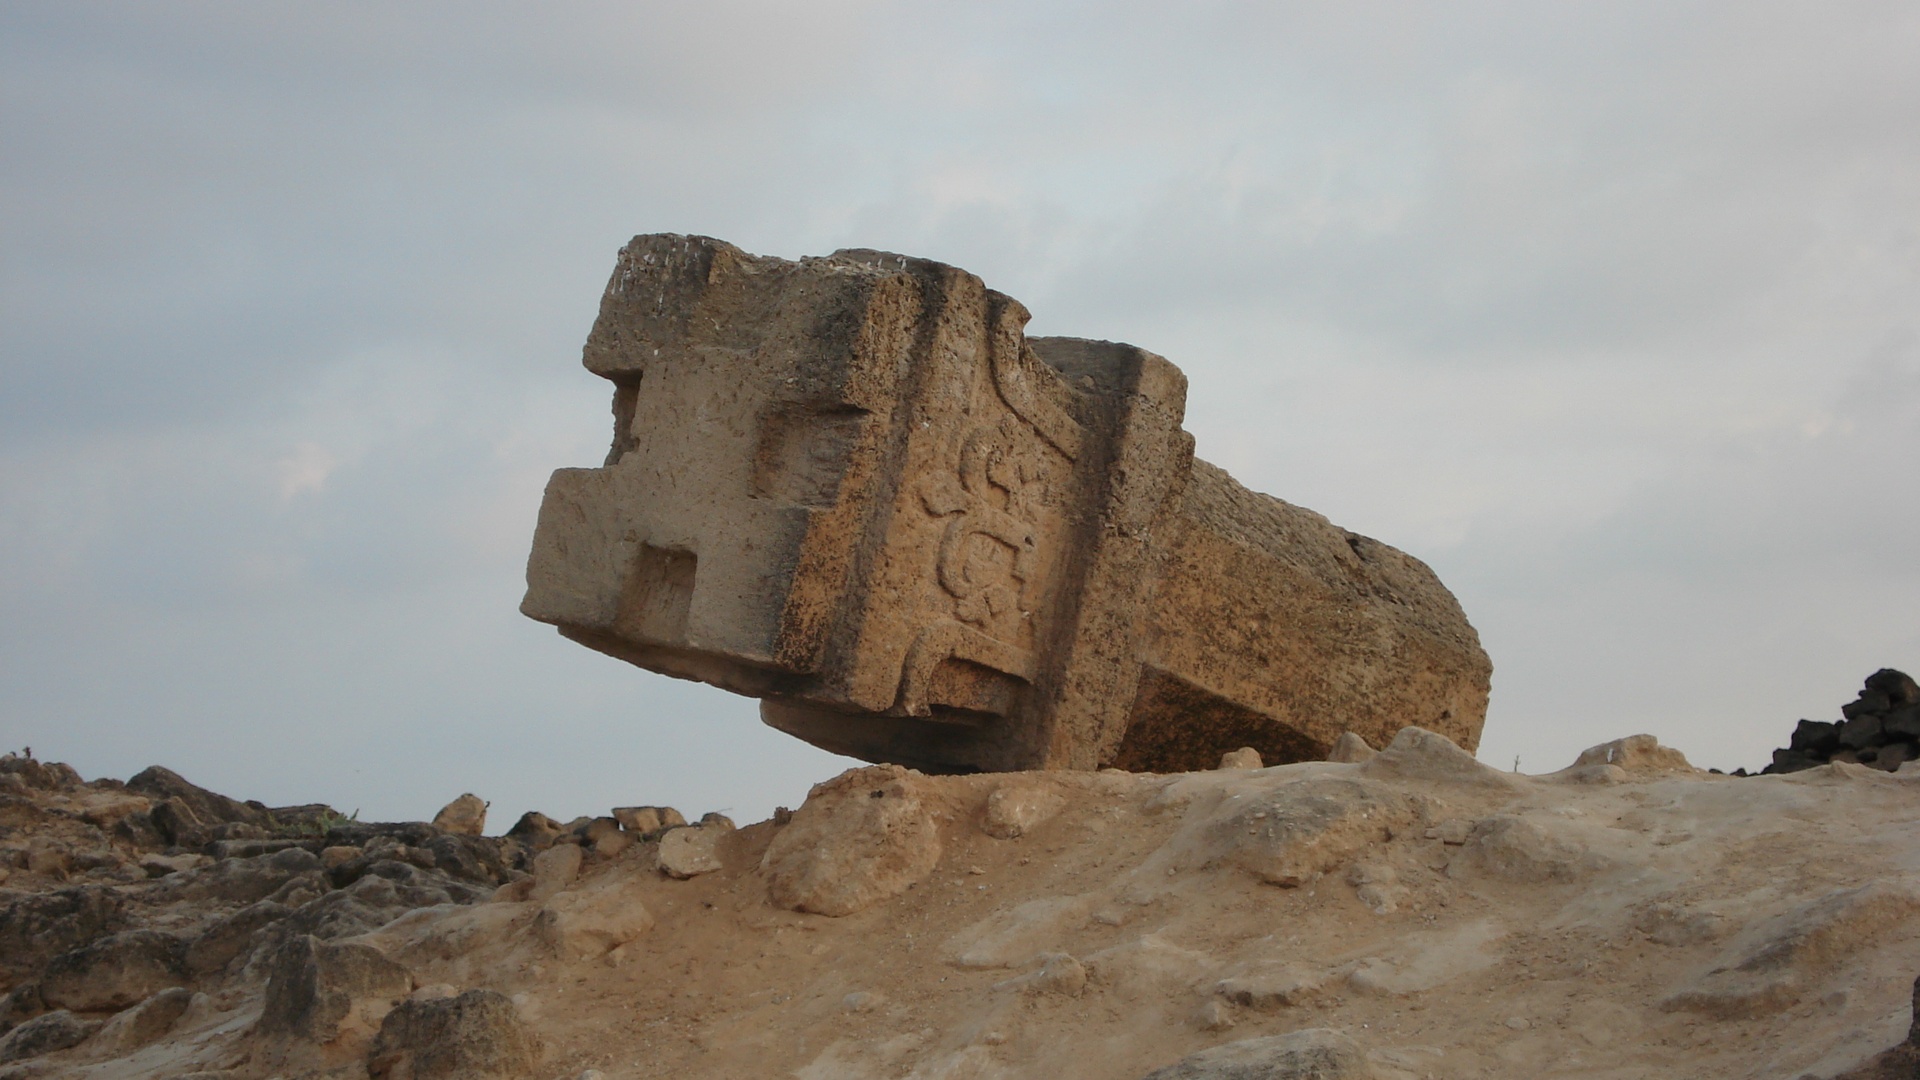 Al Baleed Archaeological Park